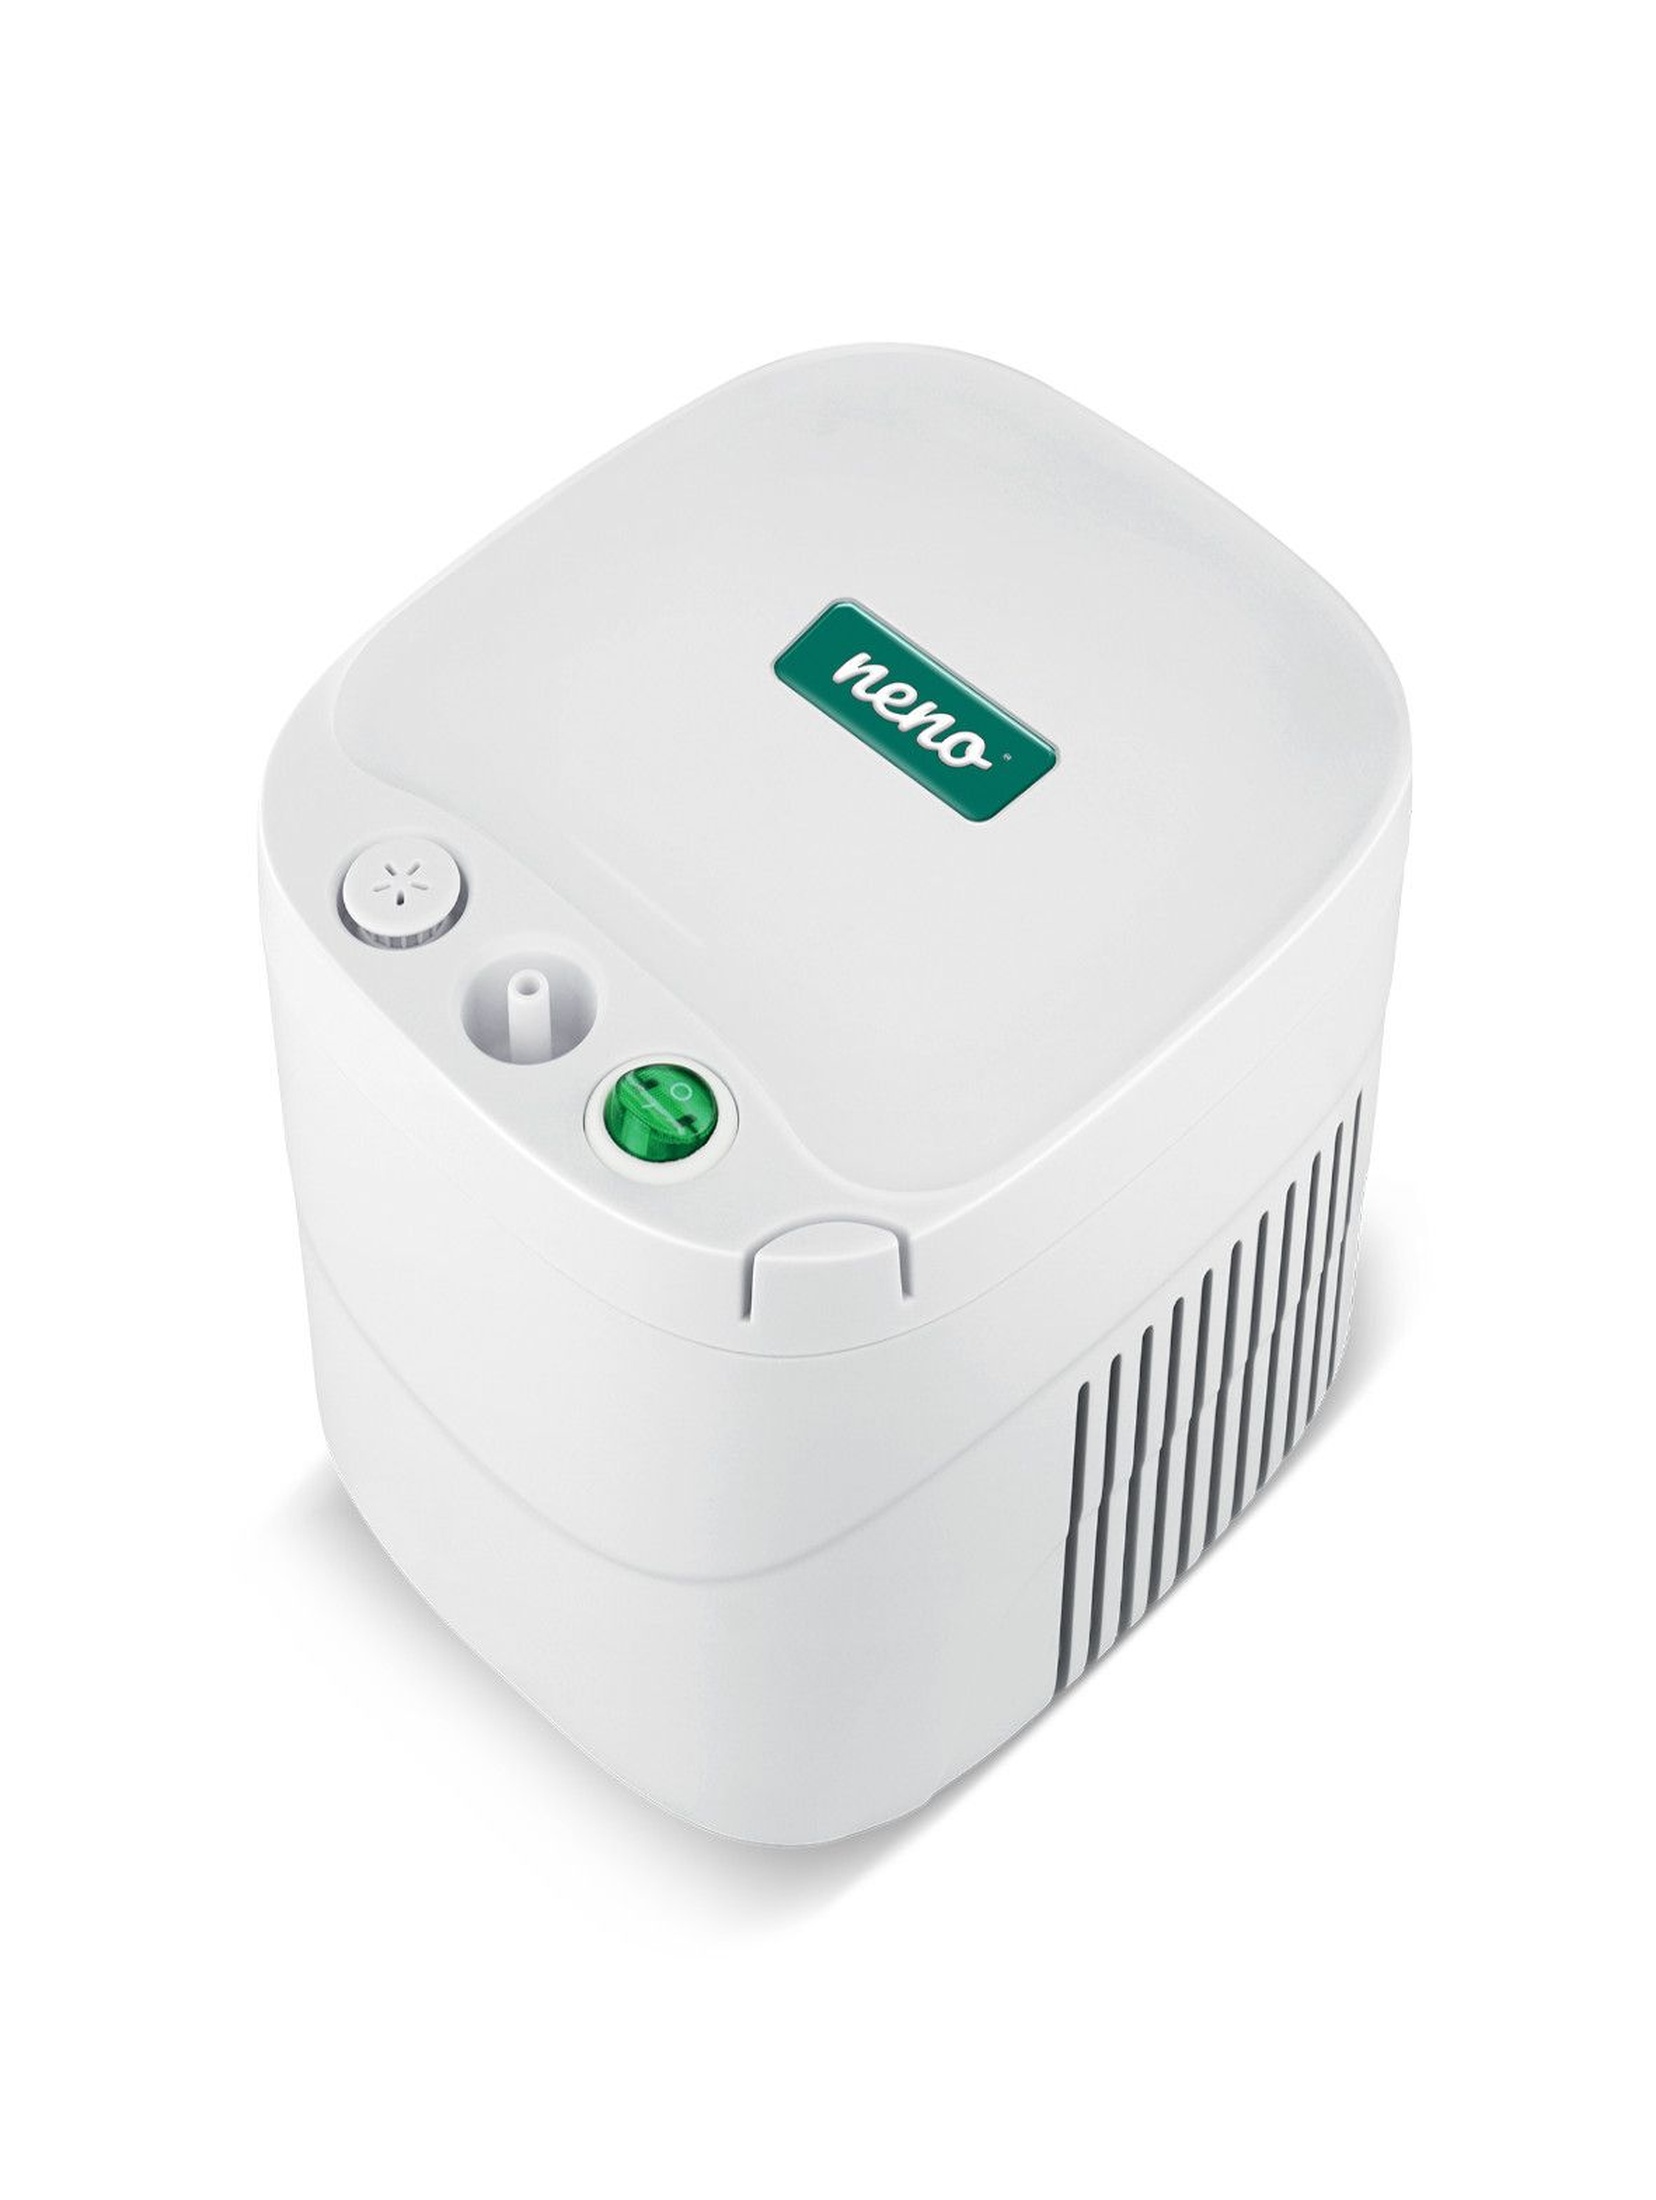 Inhalator Neno Sente  certyfikowany produkt medyczny w kolorze biało - zielonym